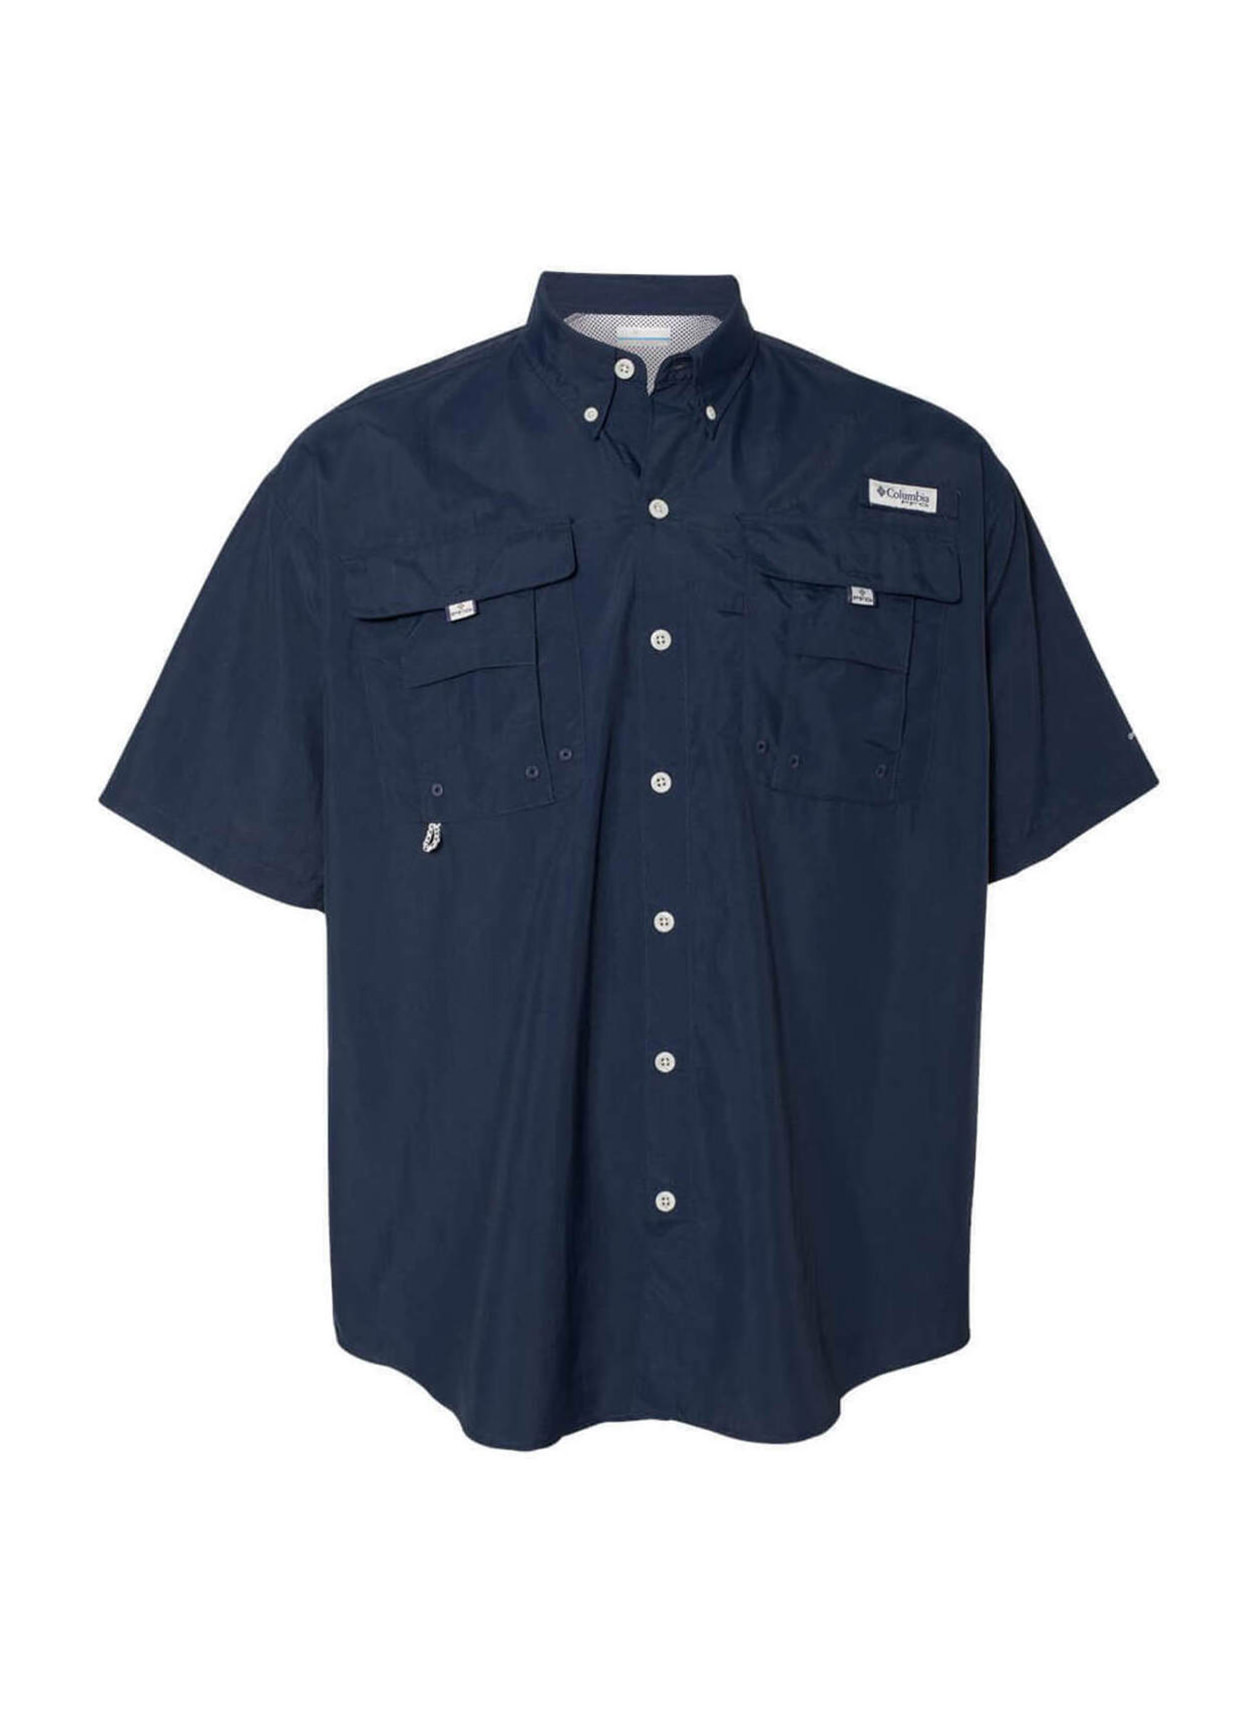 Columbia PFG Bahama II Short Sleeve Shirt 101165 S-3XL